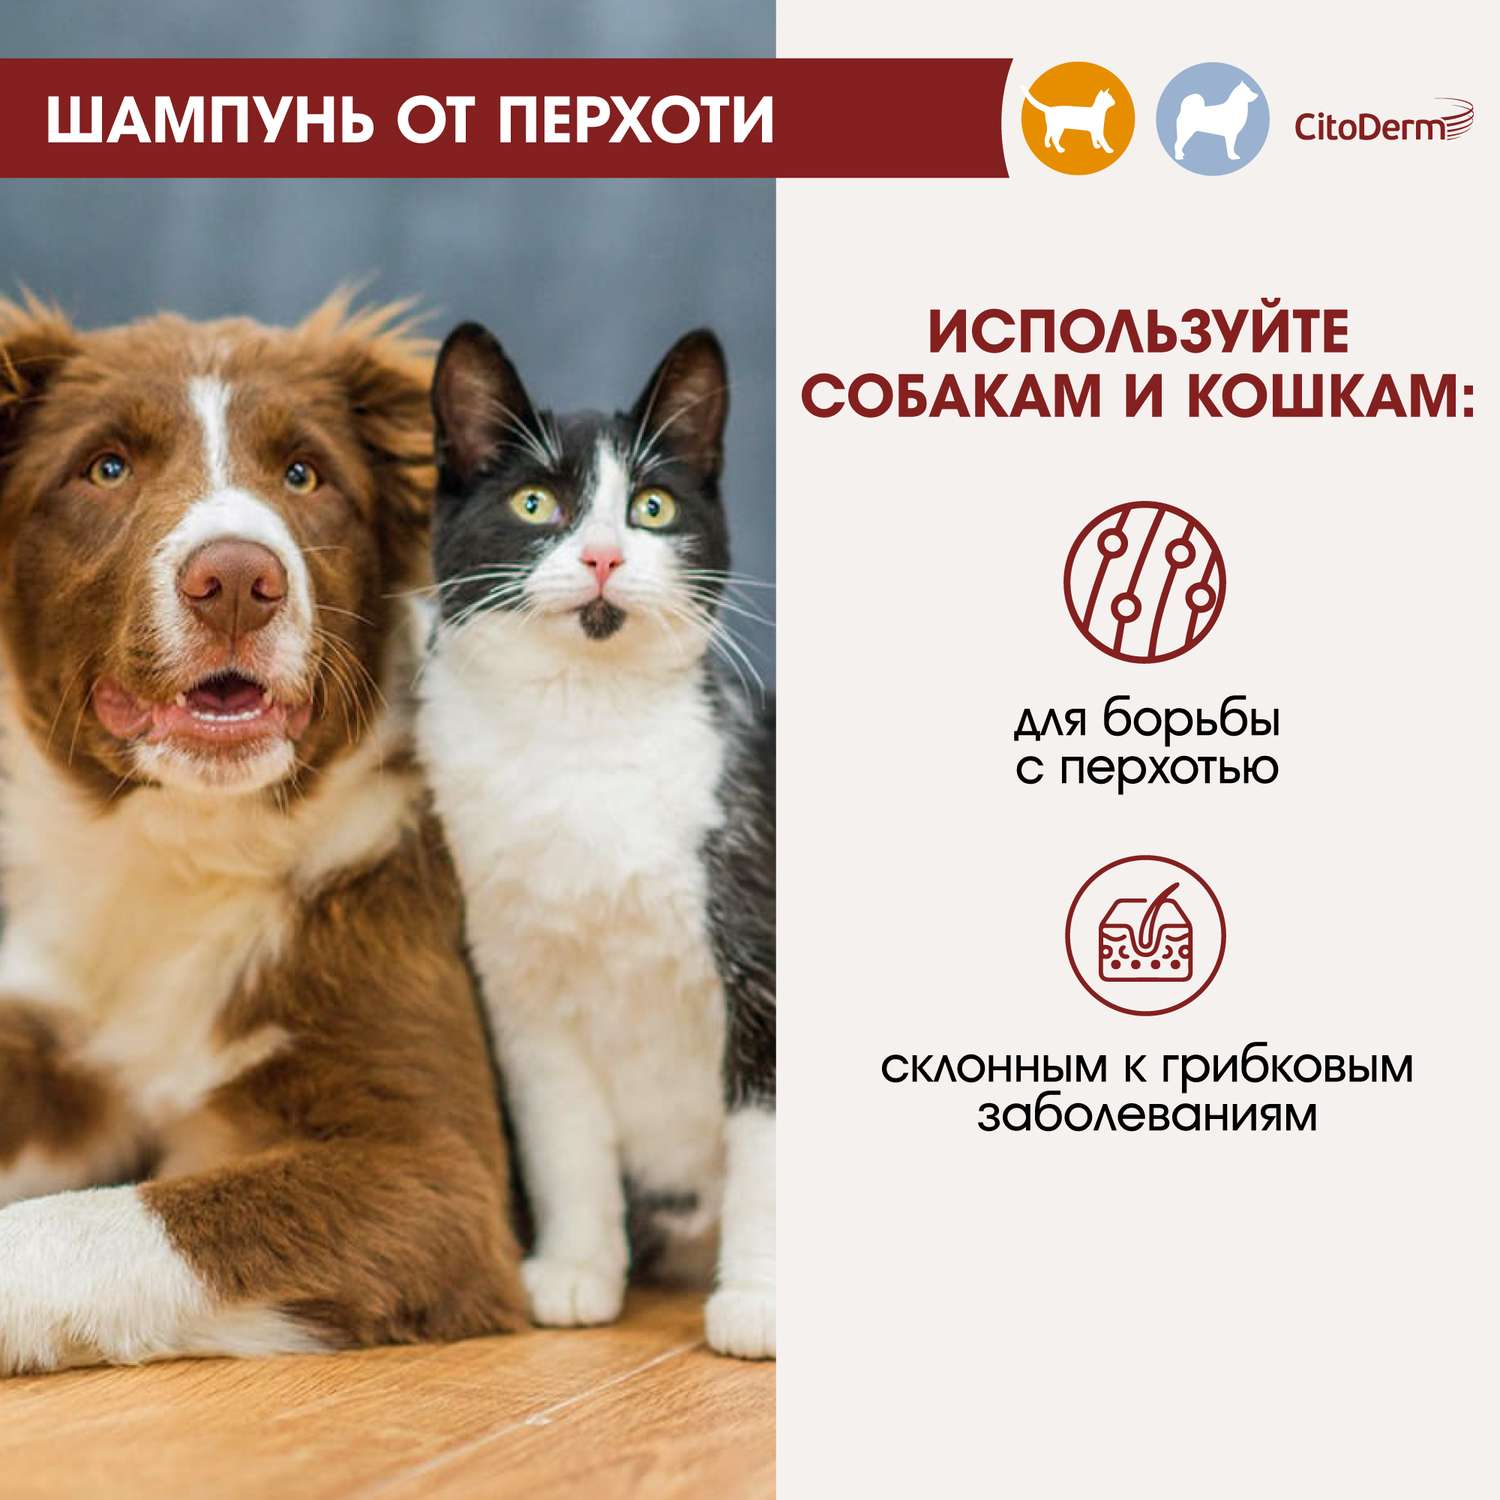 Шампунь для кошек и собак CitoDerm от перхоти 200мл - фото 4